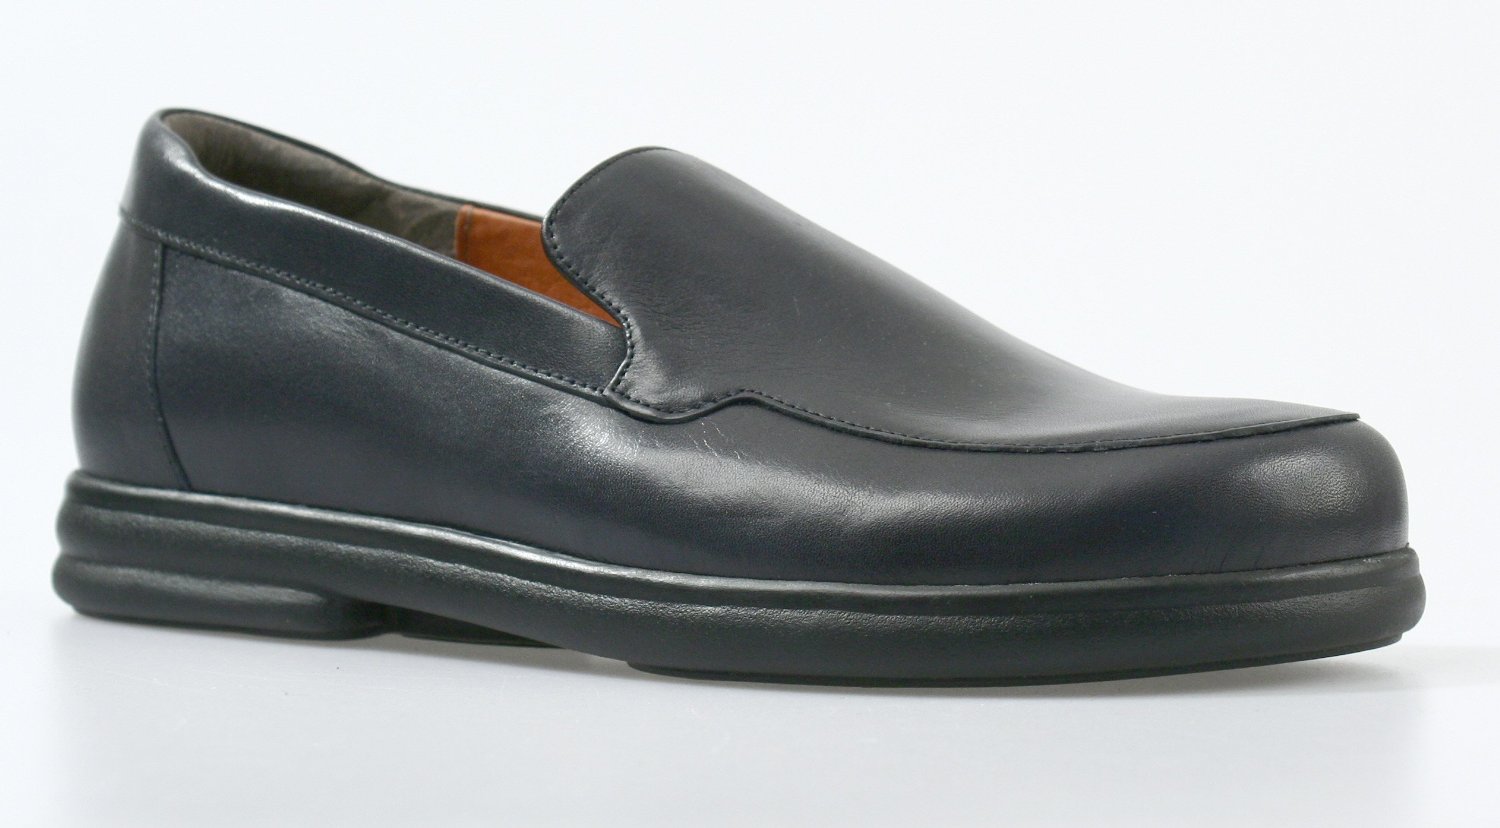 Footprints by Birkenstock PAVIA Women's Loafer / Slip On Shoe | eBay